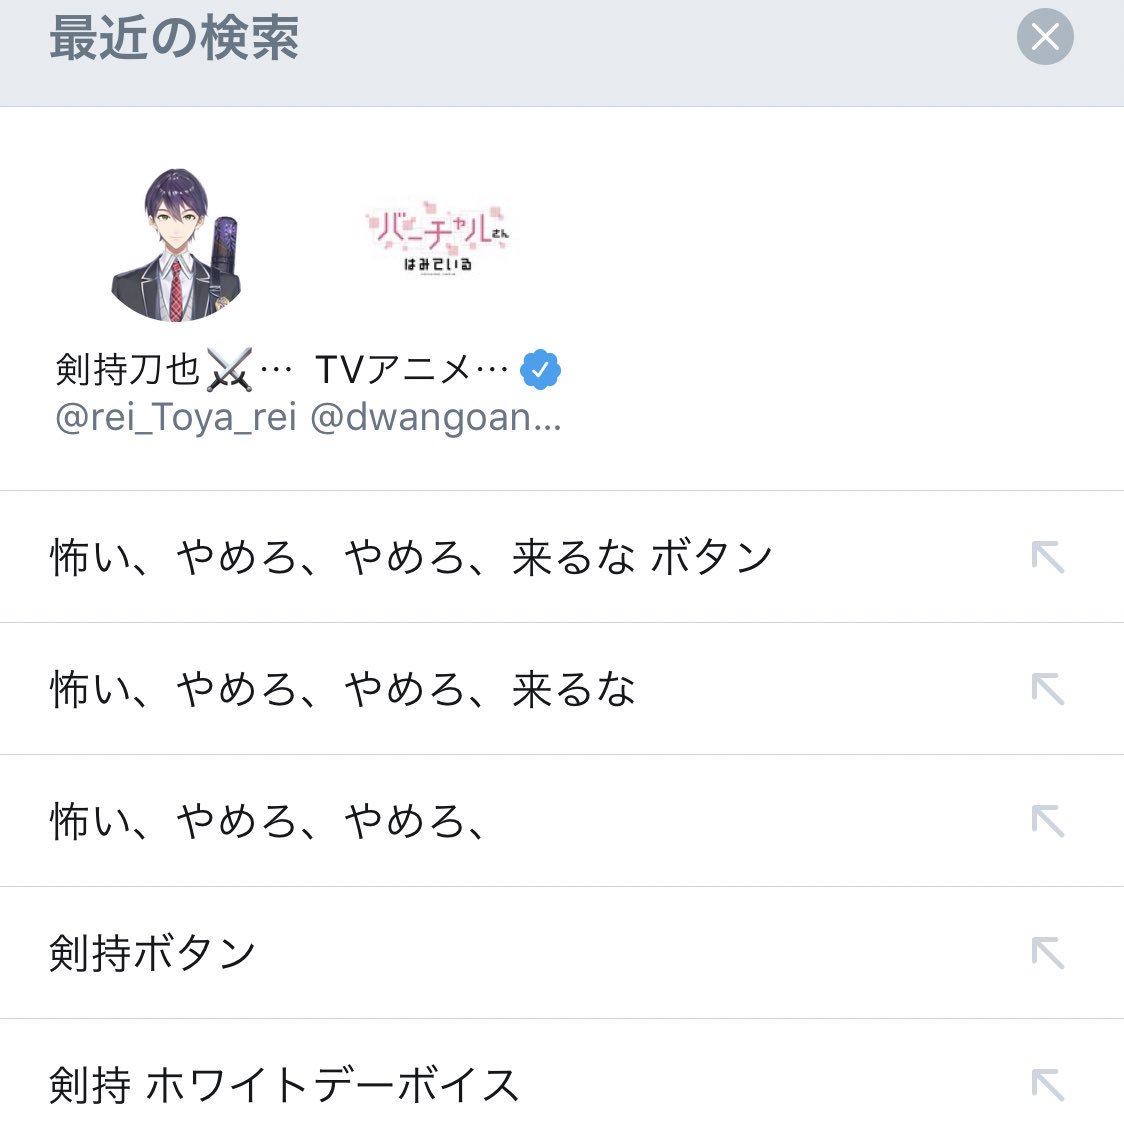 剣持ボタン Twitter Search Twitter